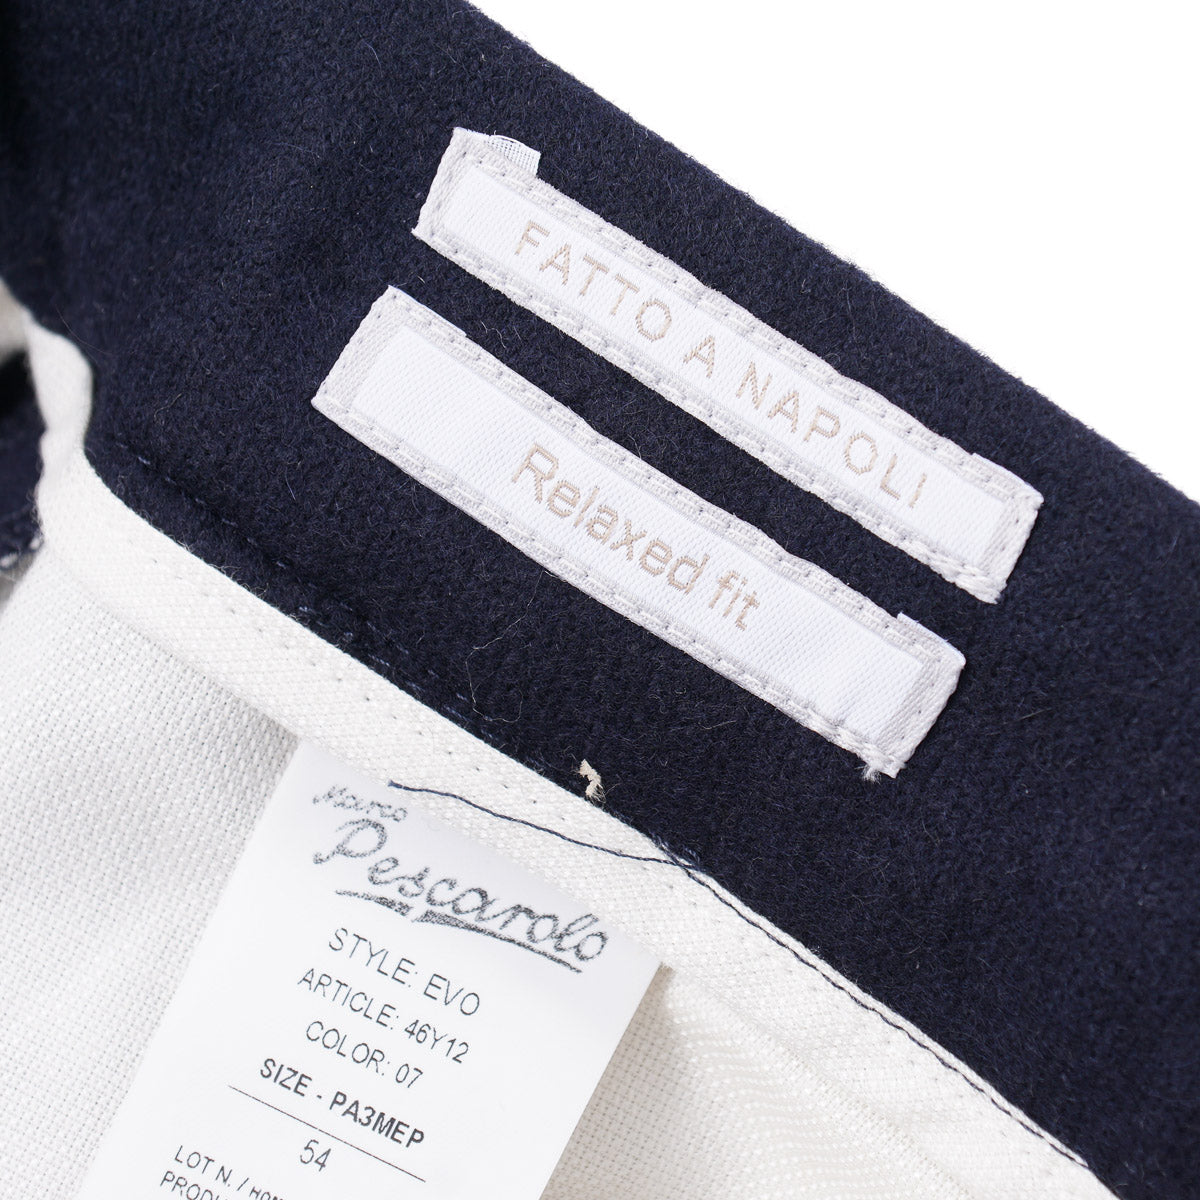 Marco Pescarolo Hybrid Jersey Cashmere Pants - Top Shelf Apparel